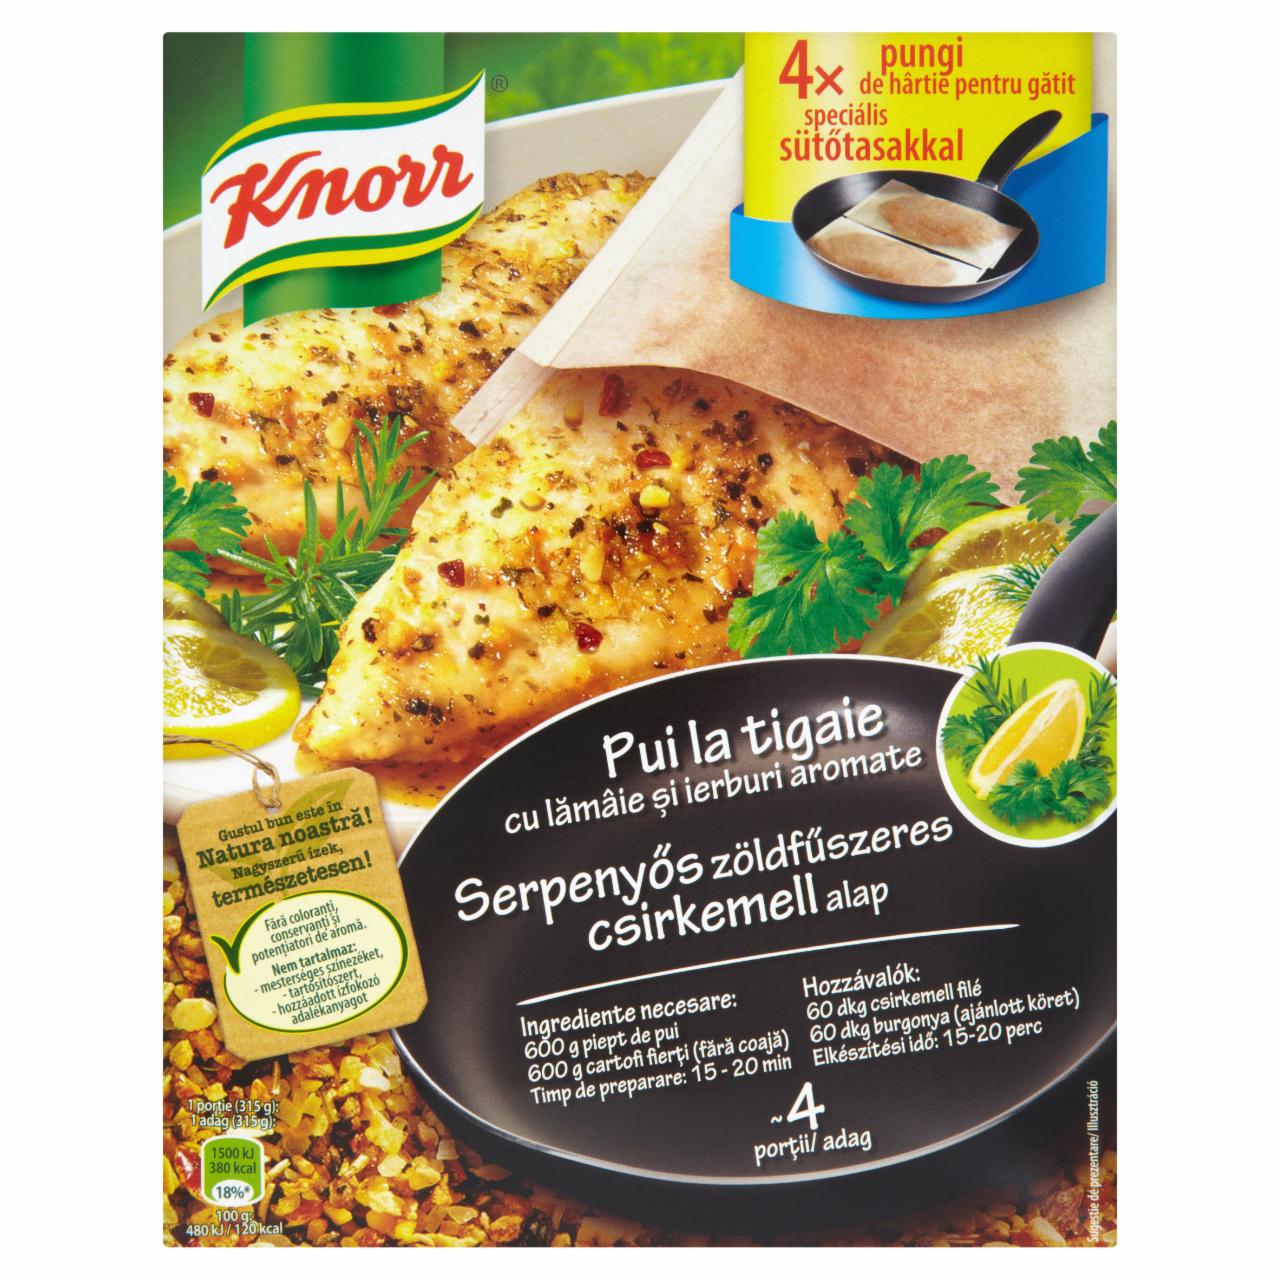 Képek - Knorr serpenyős zöldfűszeres csirkemell alap 20 g